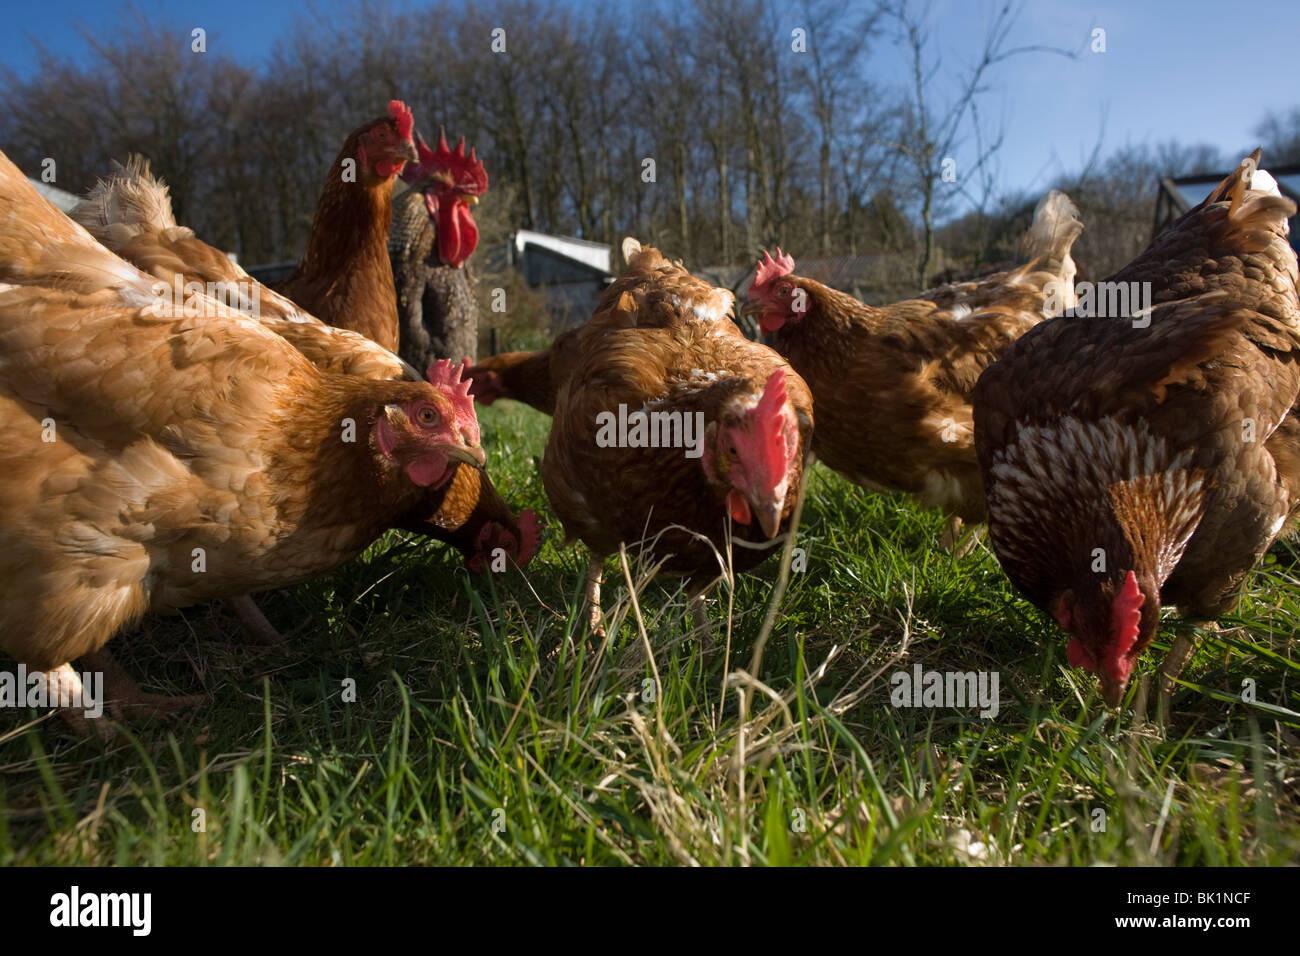 Free Range gallina gallinas merodean en un campo verde perteneciente a una pequeña granja en North Somerset, Inglaterra. Foto de stock